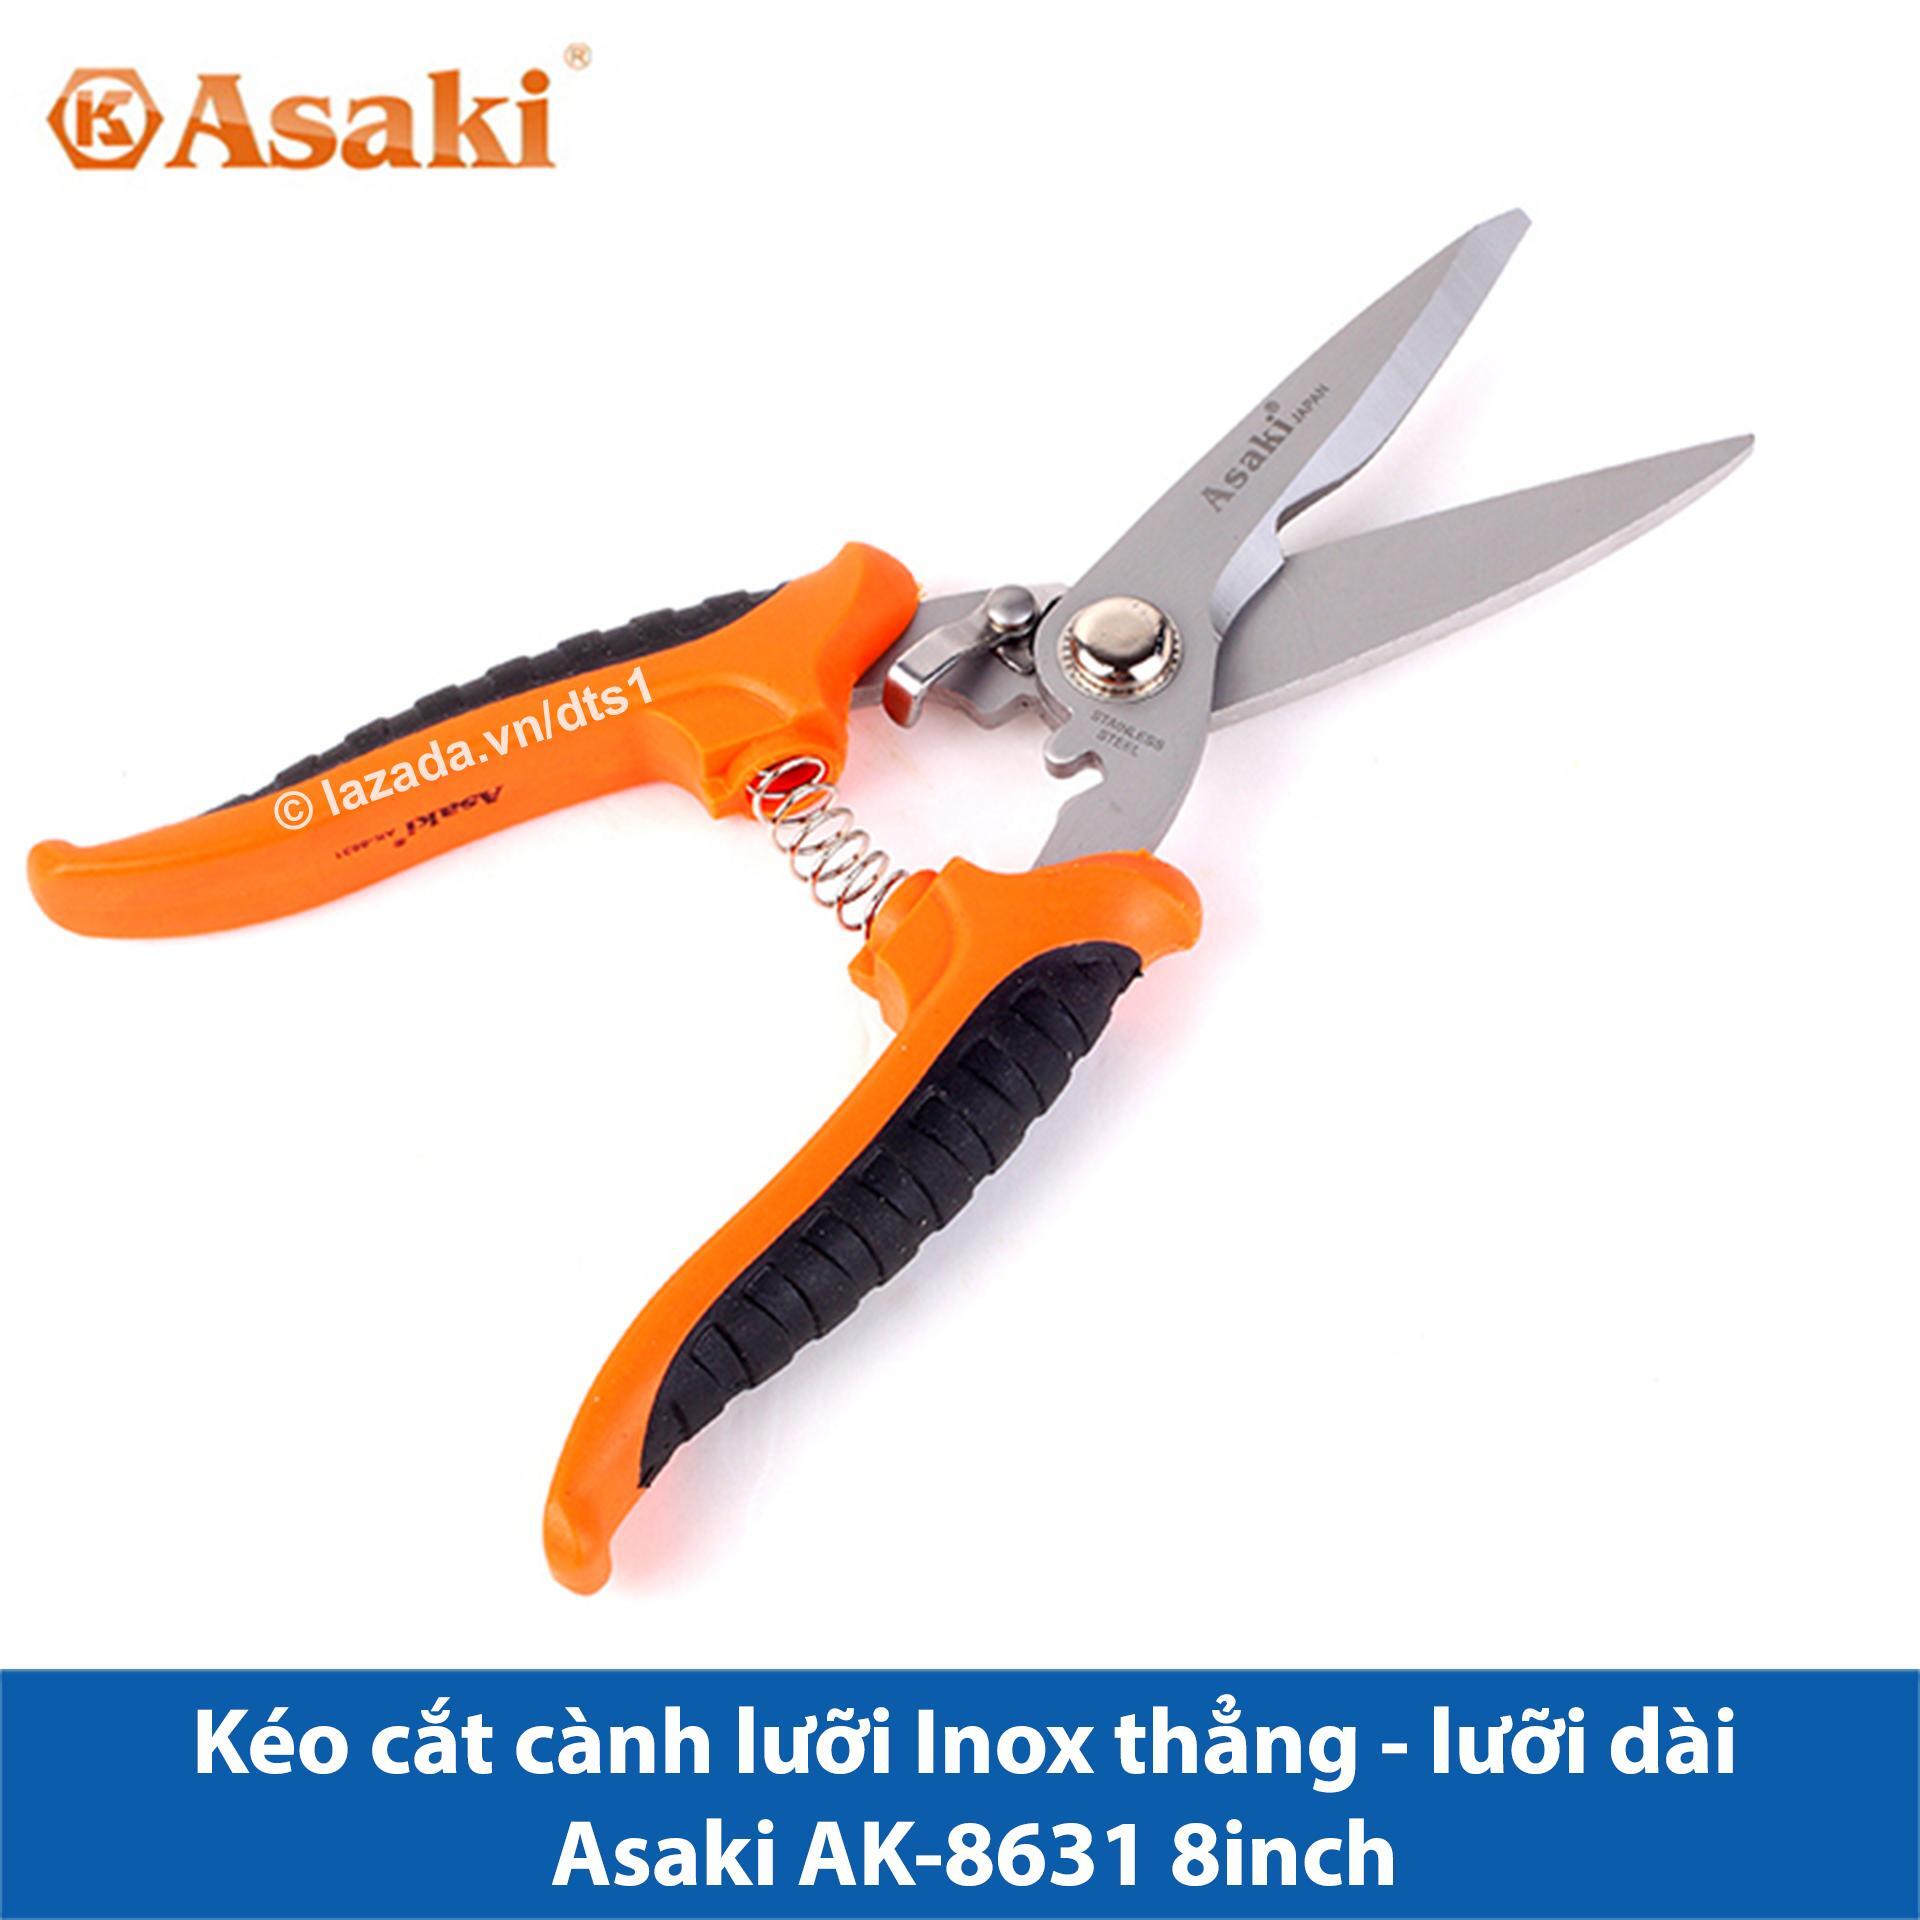 Kéo cắt cành Asaki AK-8631